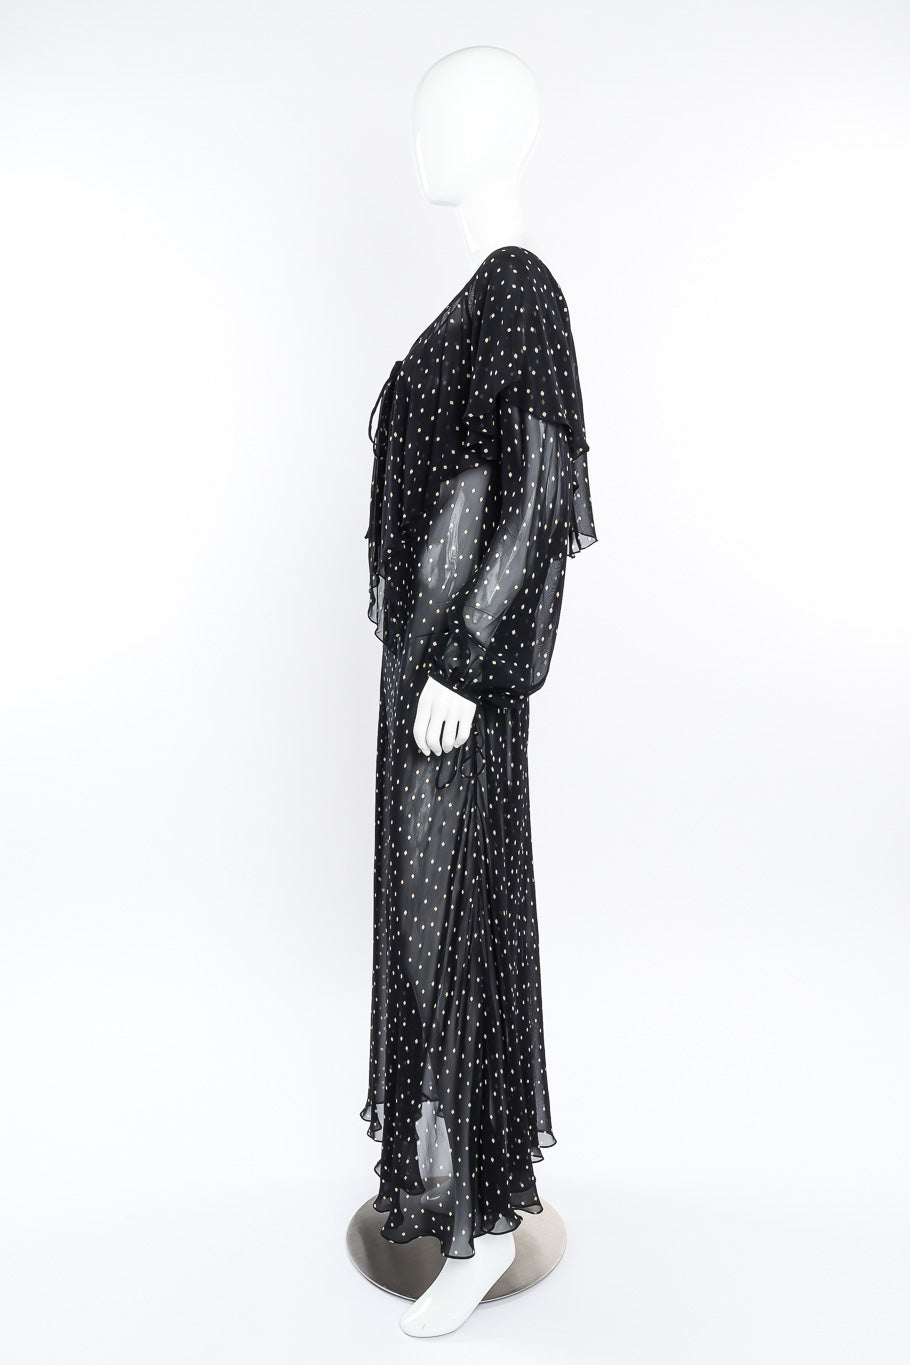 Donna Karan Diamond Dot Ruffle Dress side view on mannequin @Recessla